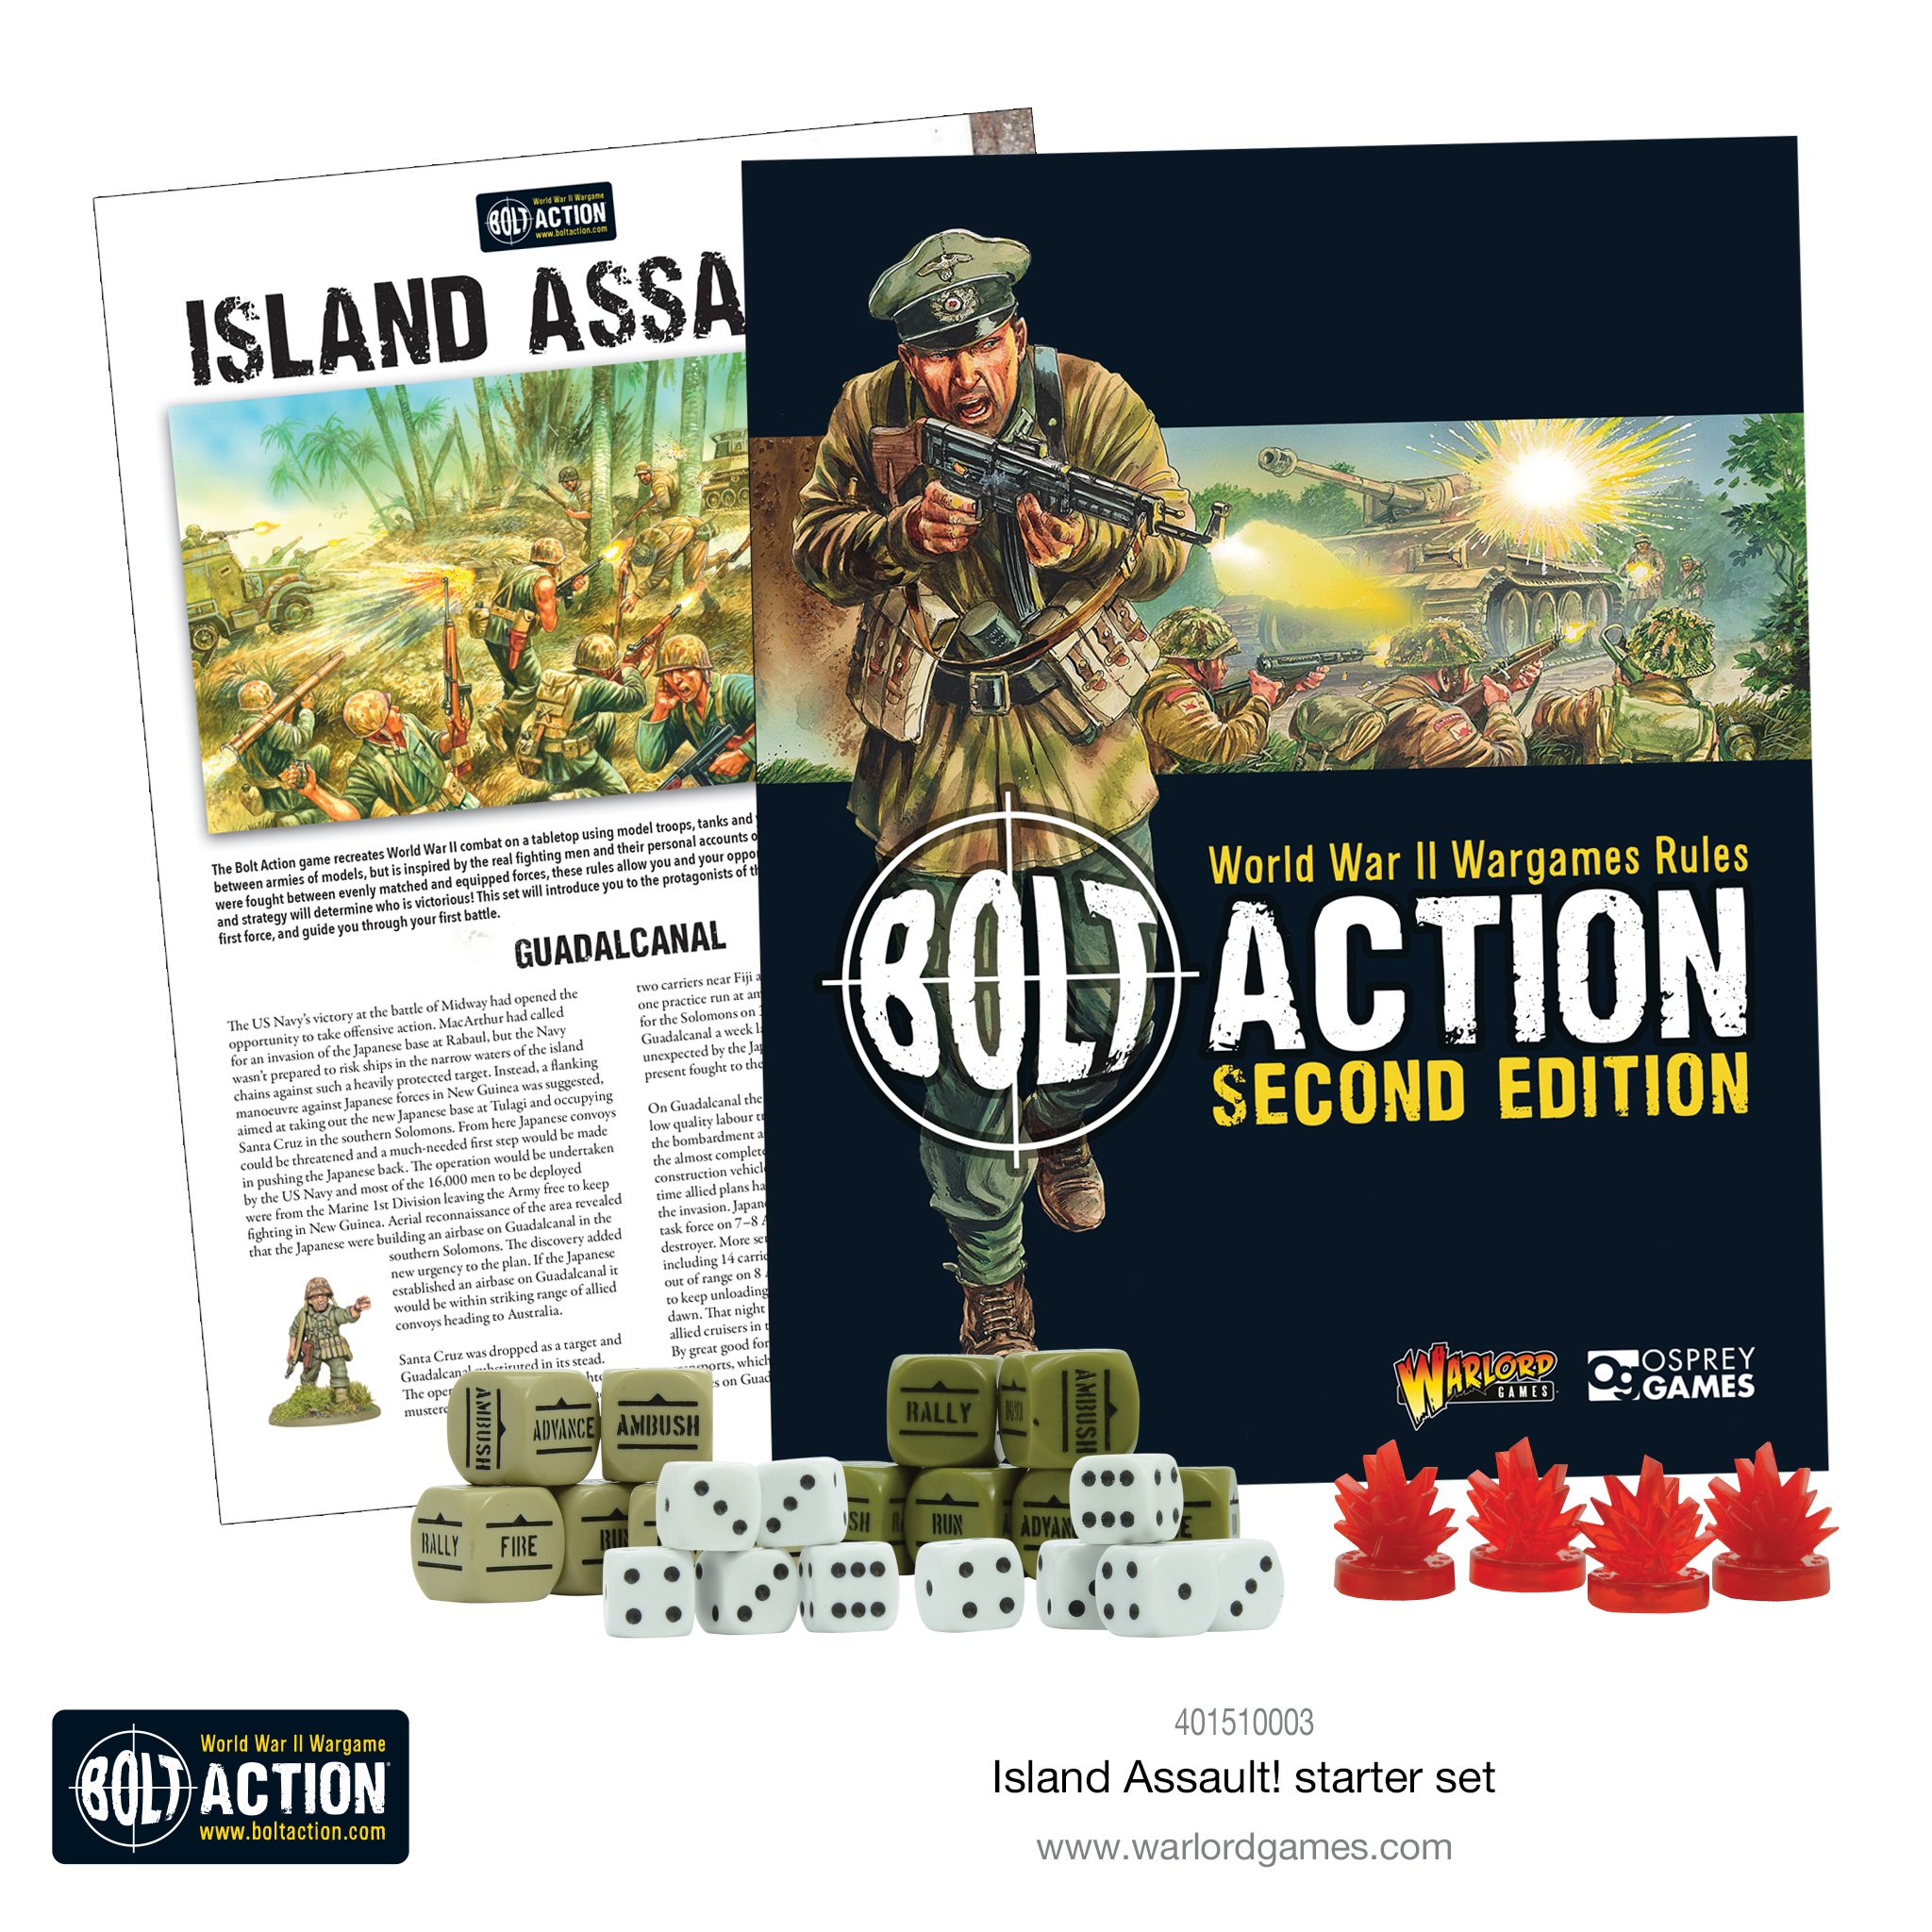 Island Assault Books - Bolt Action